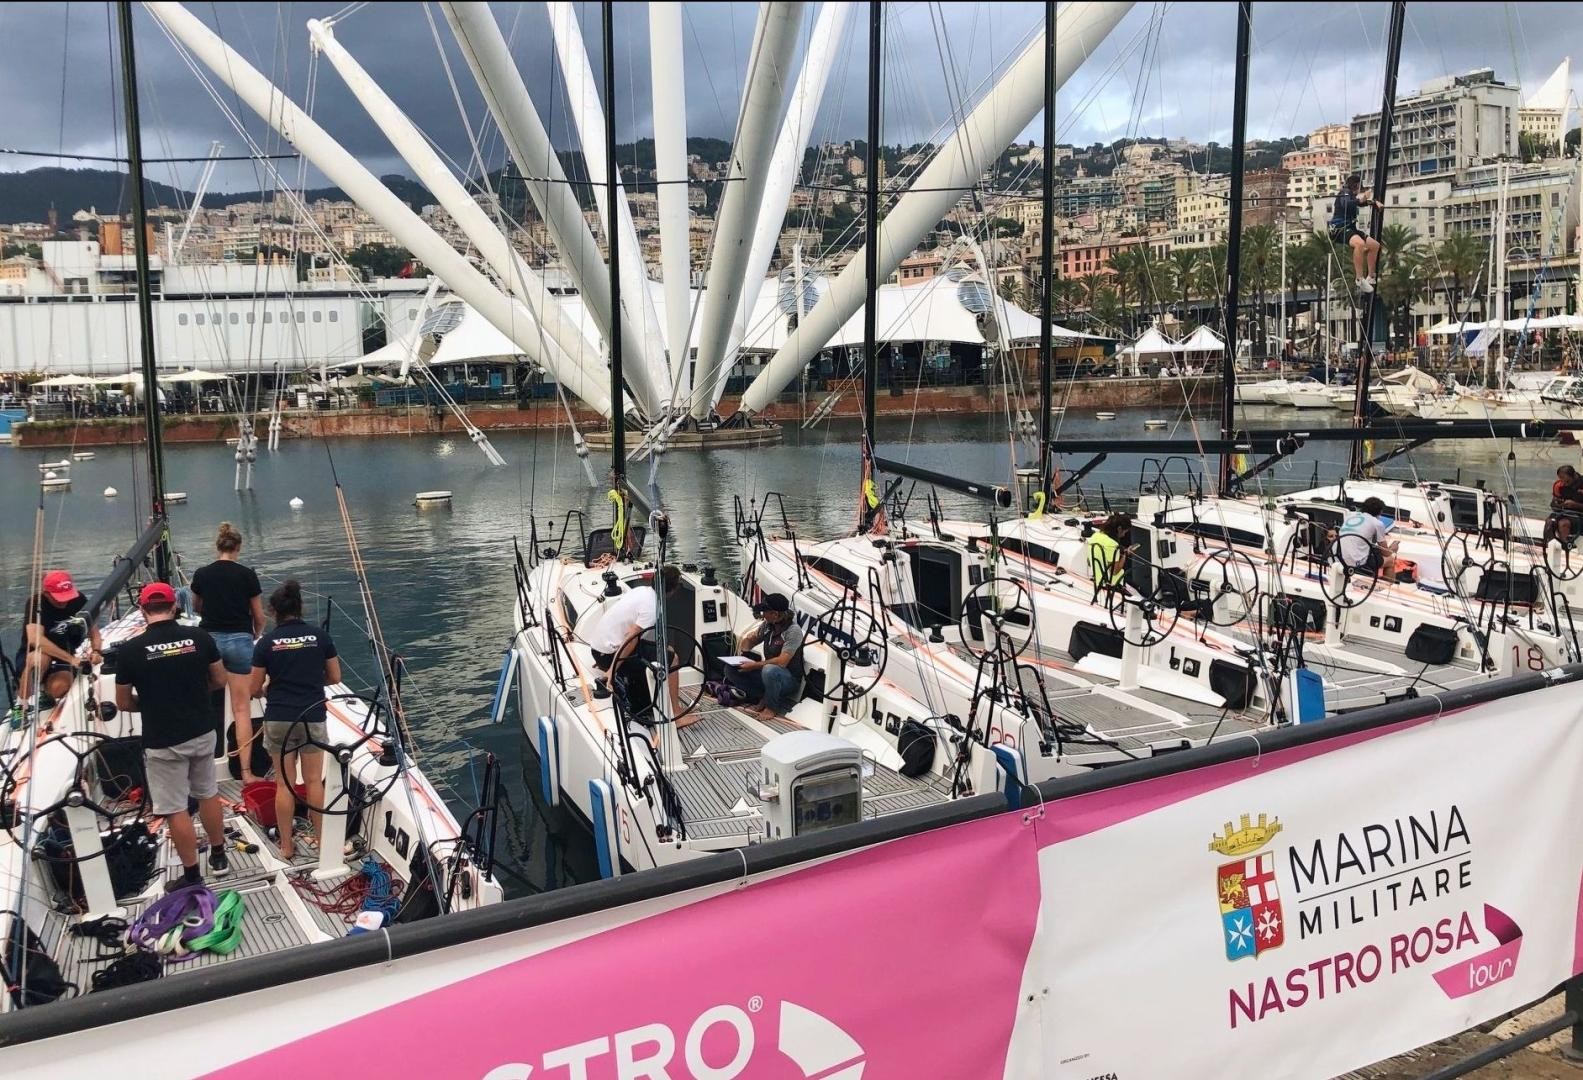 Tutto Pronto a Genova per la prima edizione del Marina Militare Nastro Rosa Campionato di Vela Offshore